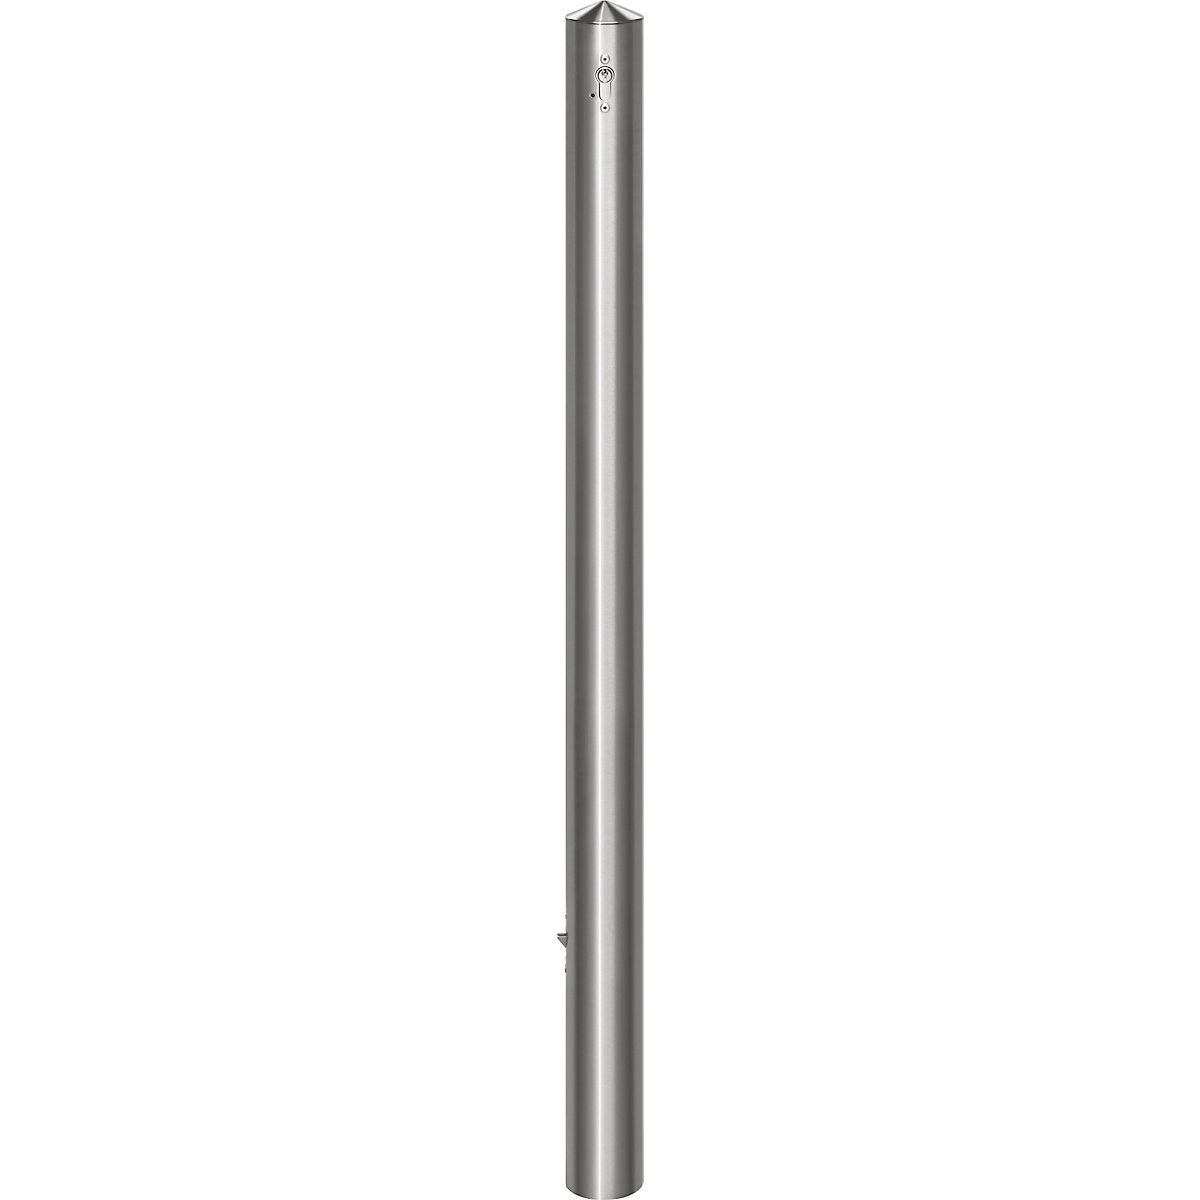 Stup za ograđivanje od nehrđajućeg čelika, s konusnom glavom, za betoniranje s podnom čahurom, Ø 76 mm, profilni cilindar-2